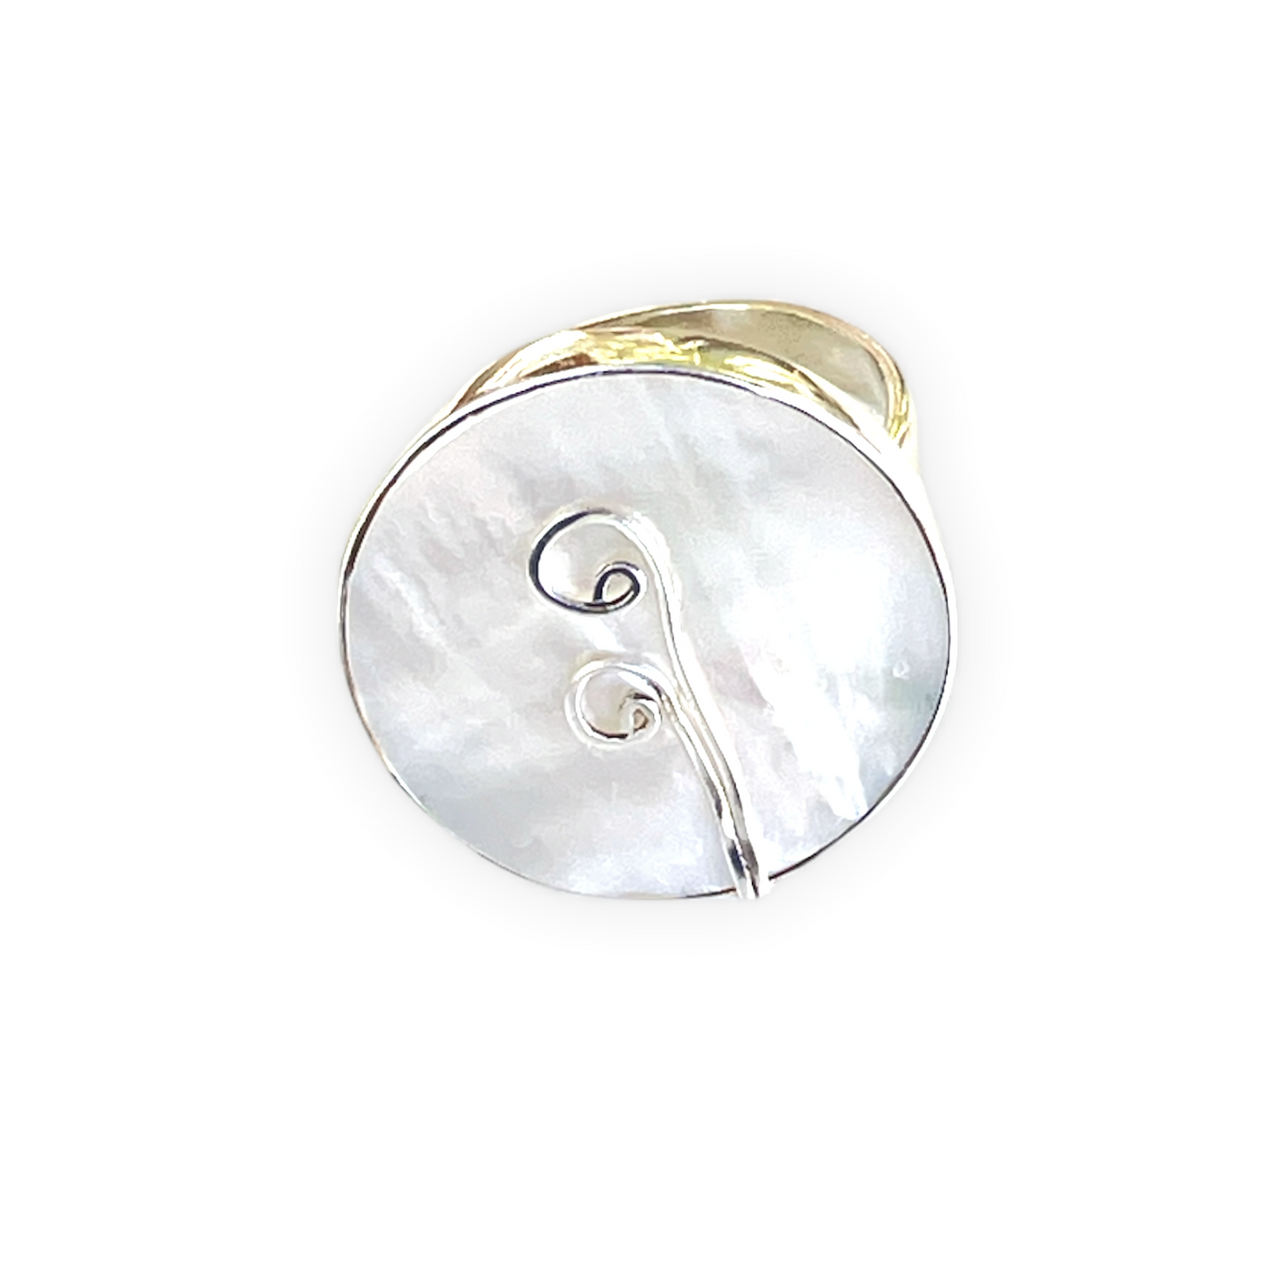 Espectacular anillo de plata de ley con Nácar. Este anillo es ajustable lo que lo hace perfecto. Además es super combinable con tu look favorito. Frontal